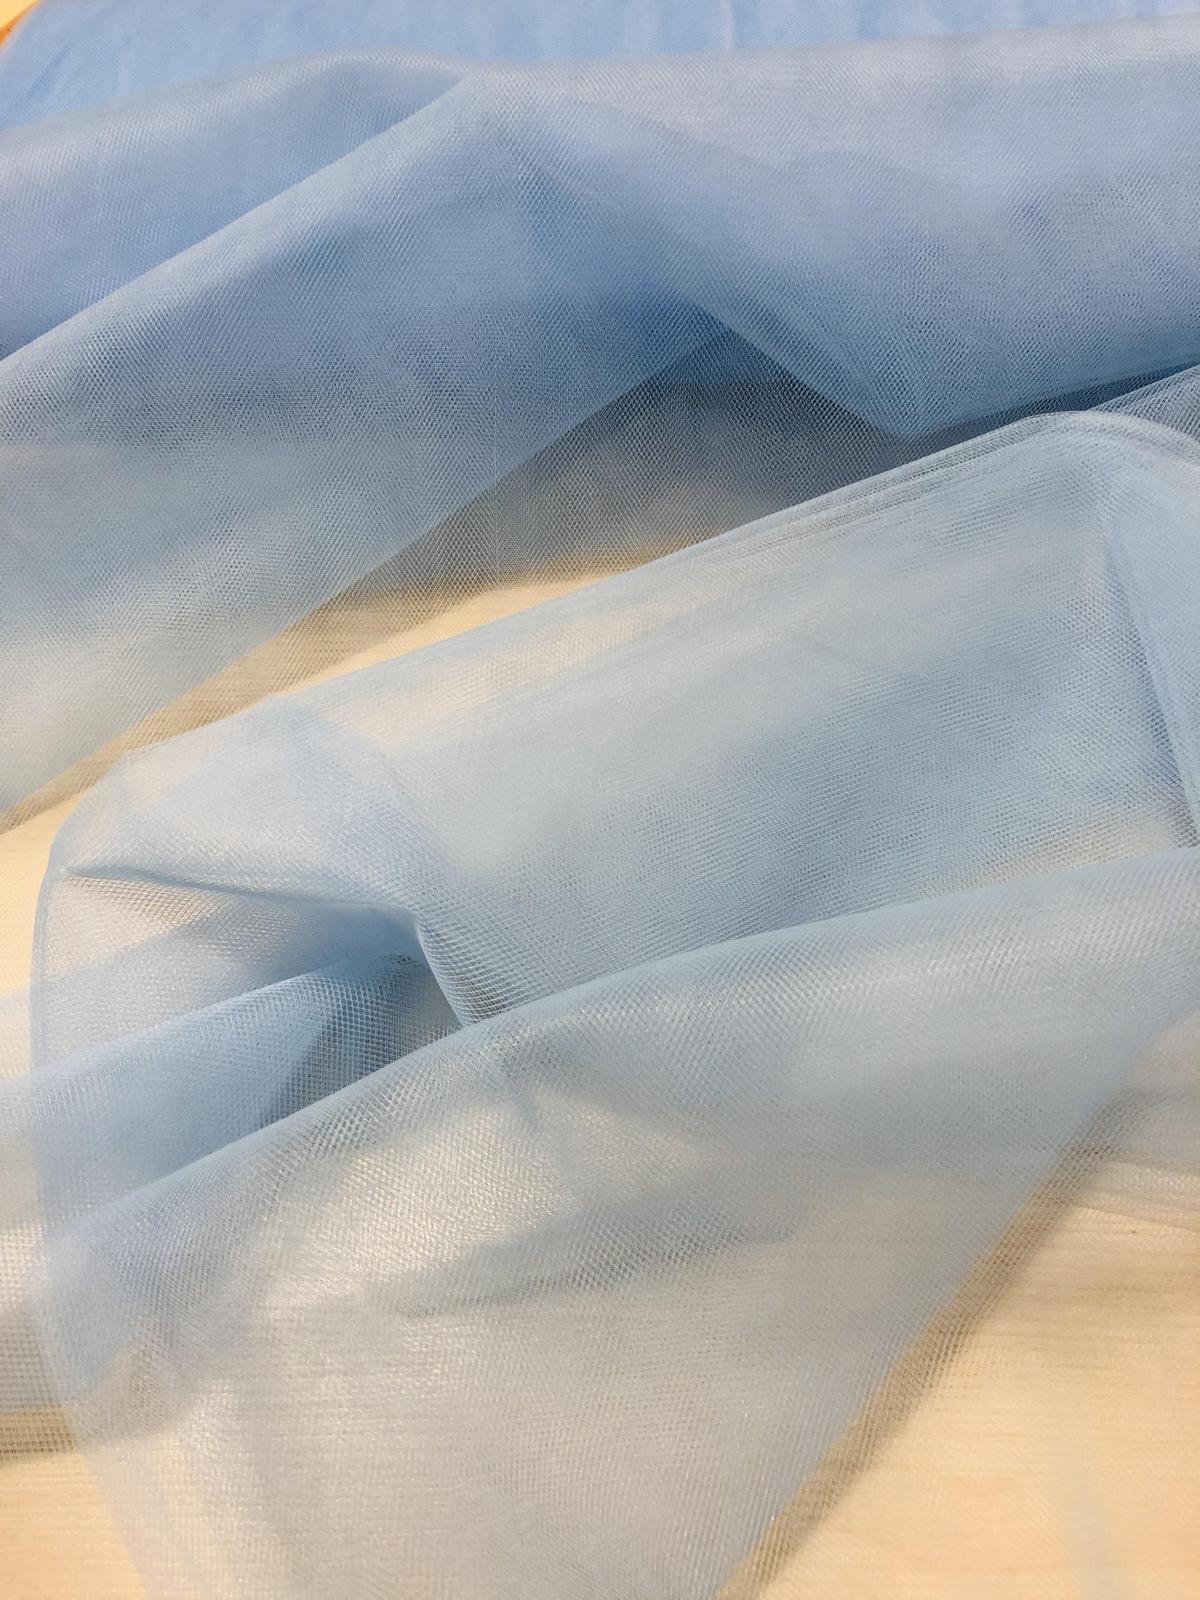 fabric tulle light blue price per meter 3.50 €